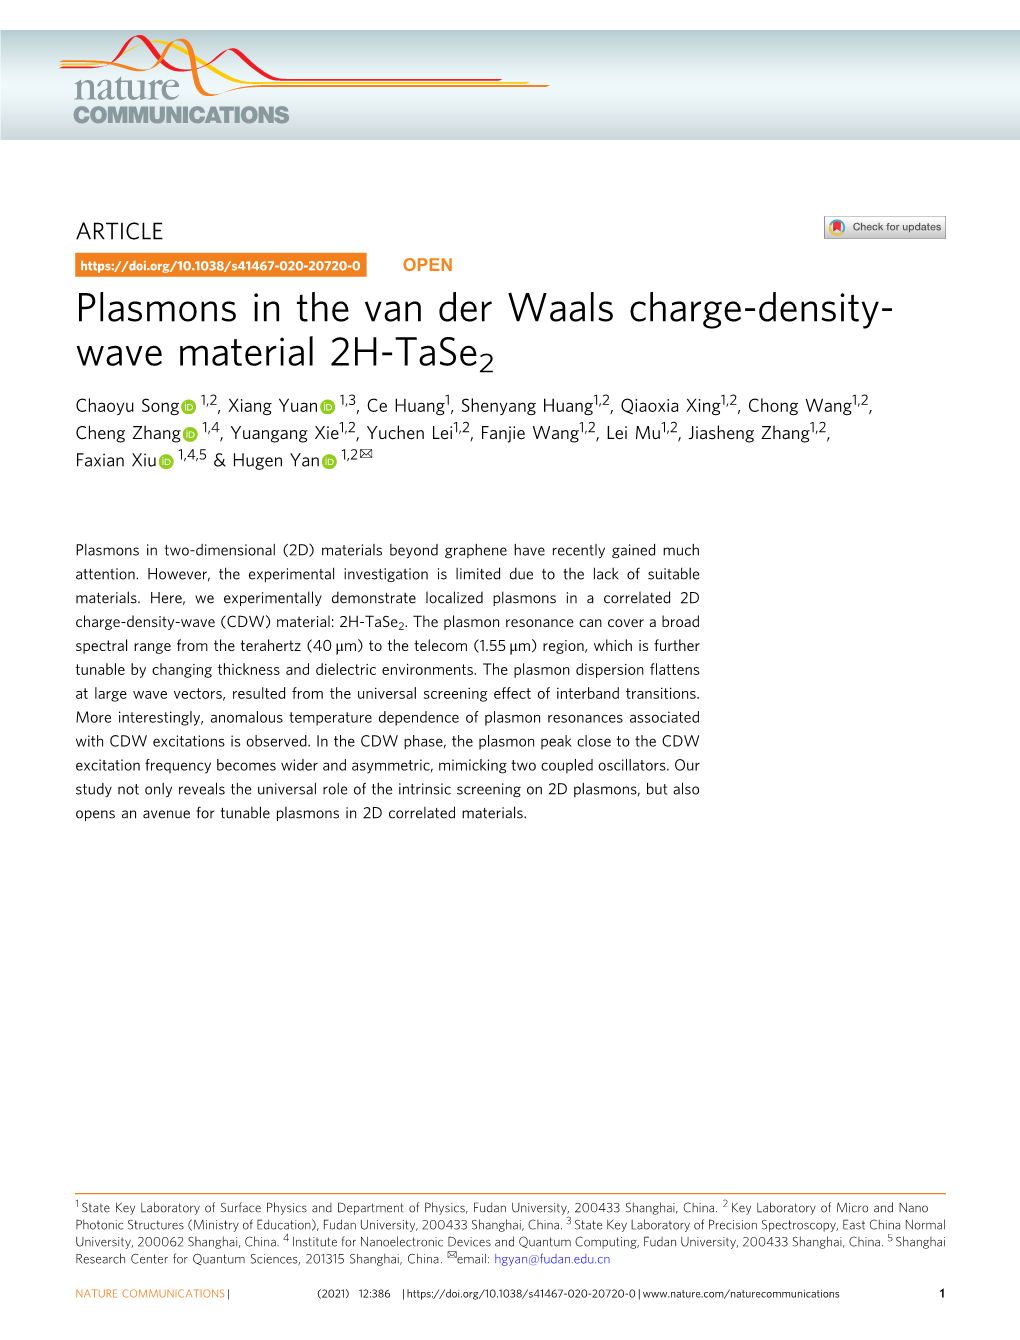 Plasmons in the Van Der Waals Charge-Density-Wave Material 2H-Tase2